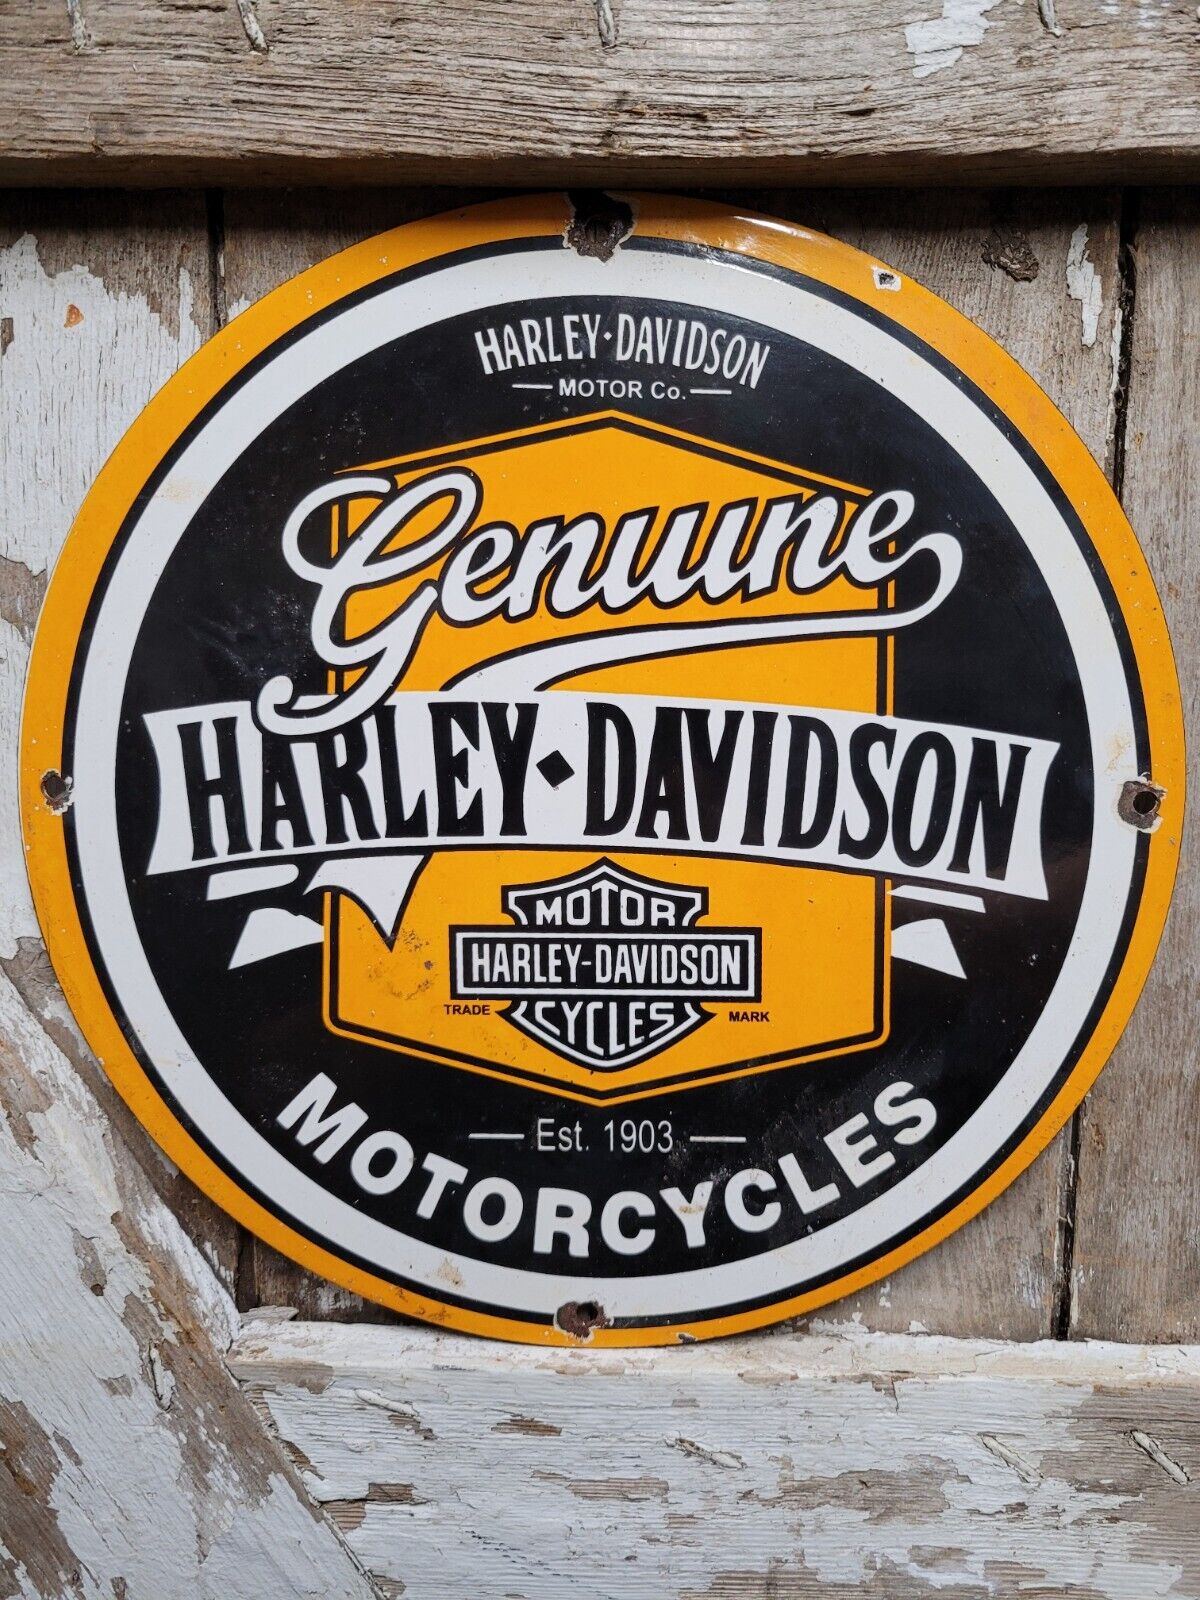 VINTAGE GENUINE HARLEY DAVIDSON MOTORCYCLE PORCELAIN SIGN DEALER SERVICE SALES